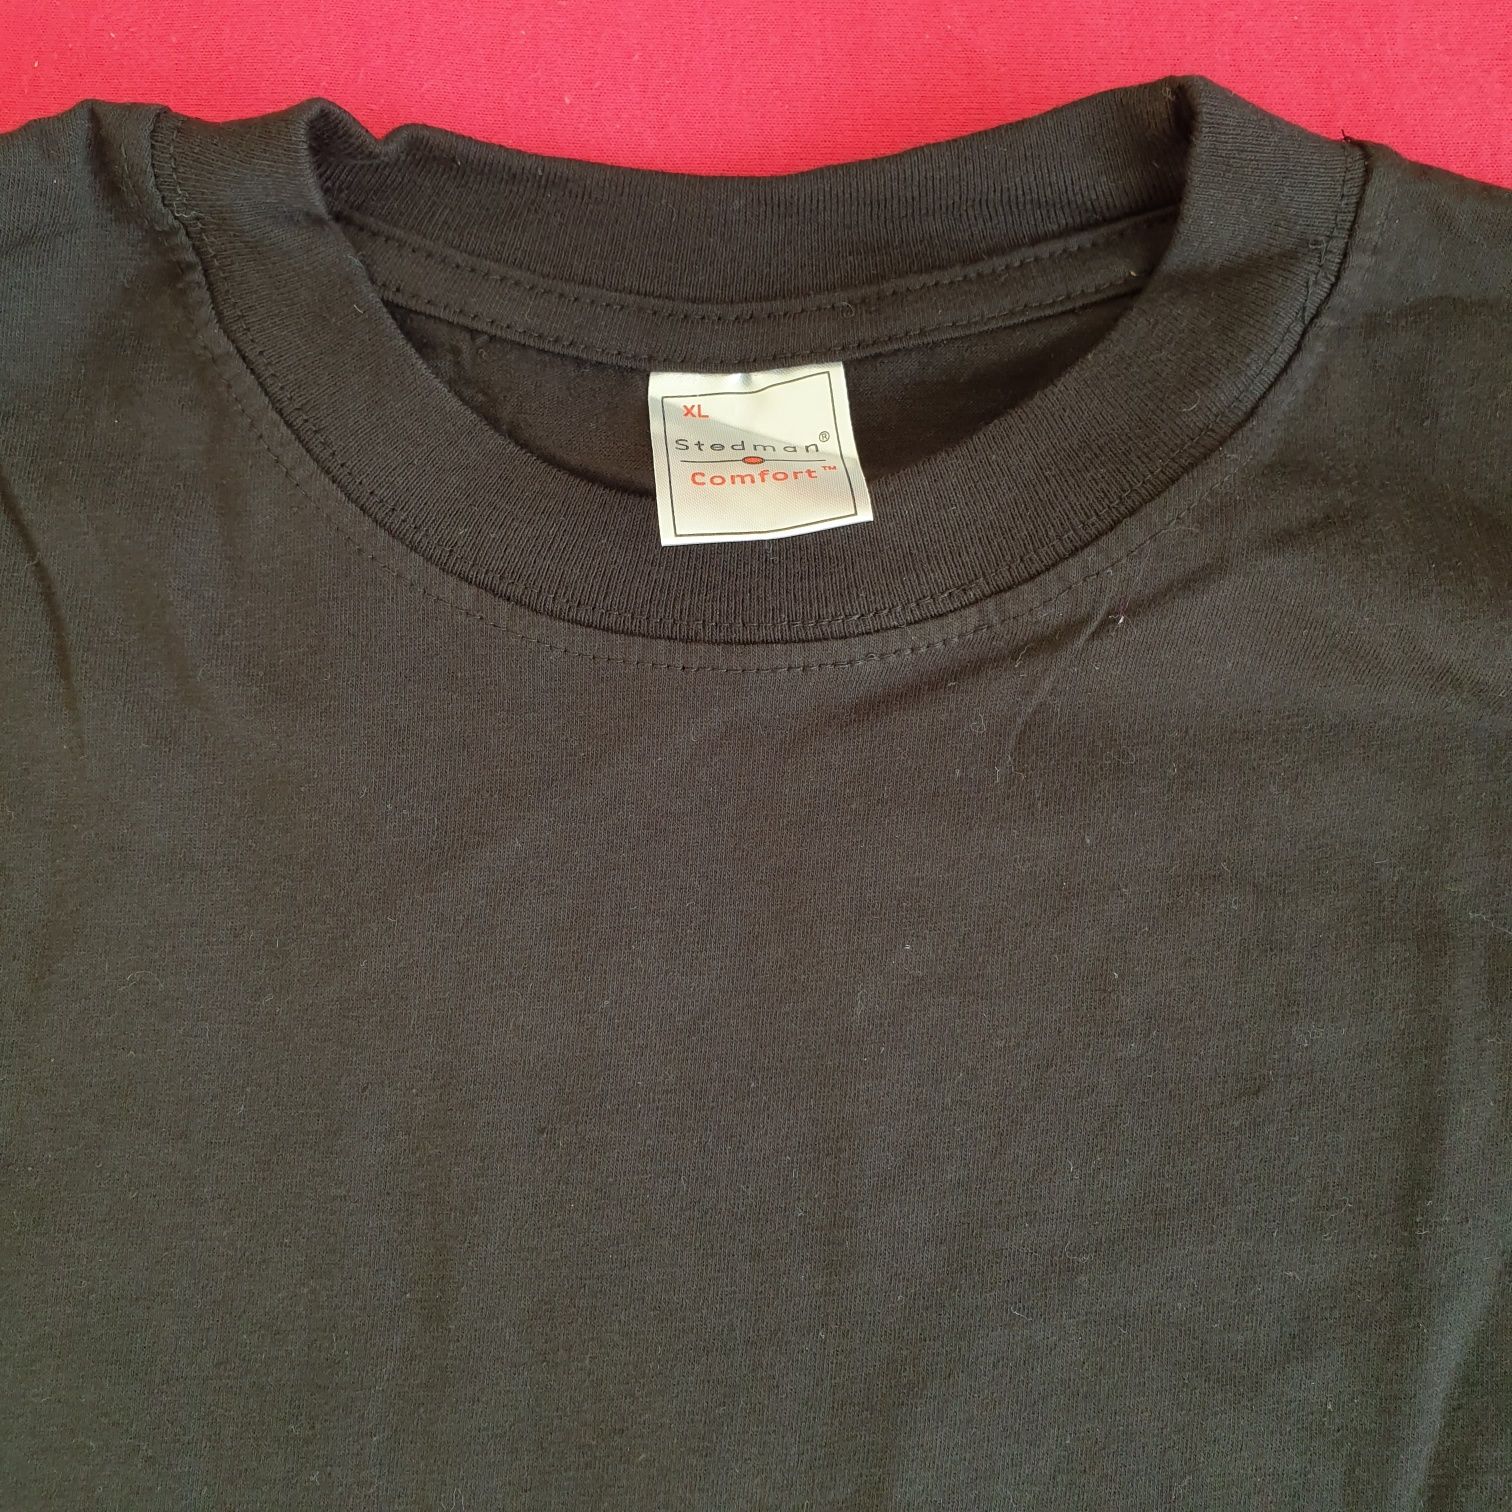 Czarna bawełniana koszulka M, L, XL nowa Stedman, gruba bawełna